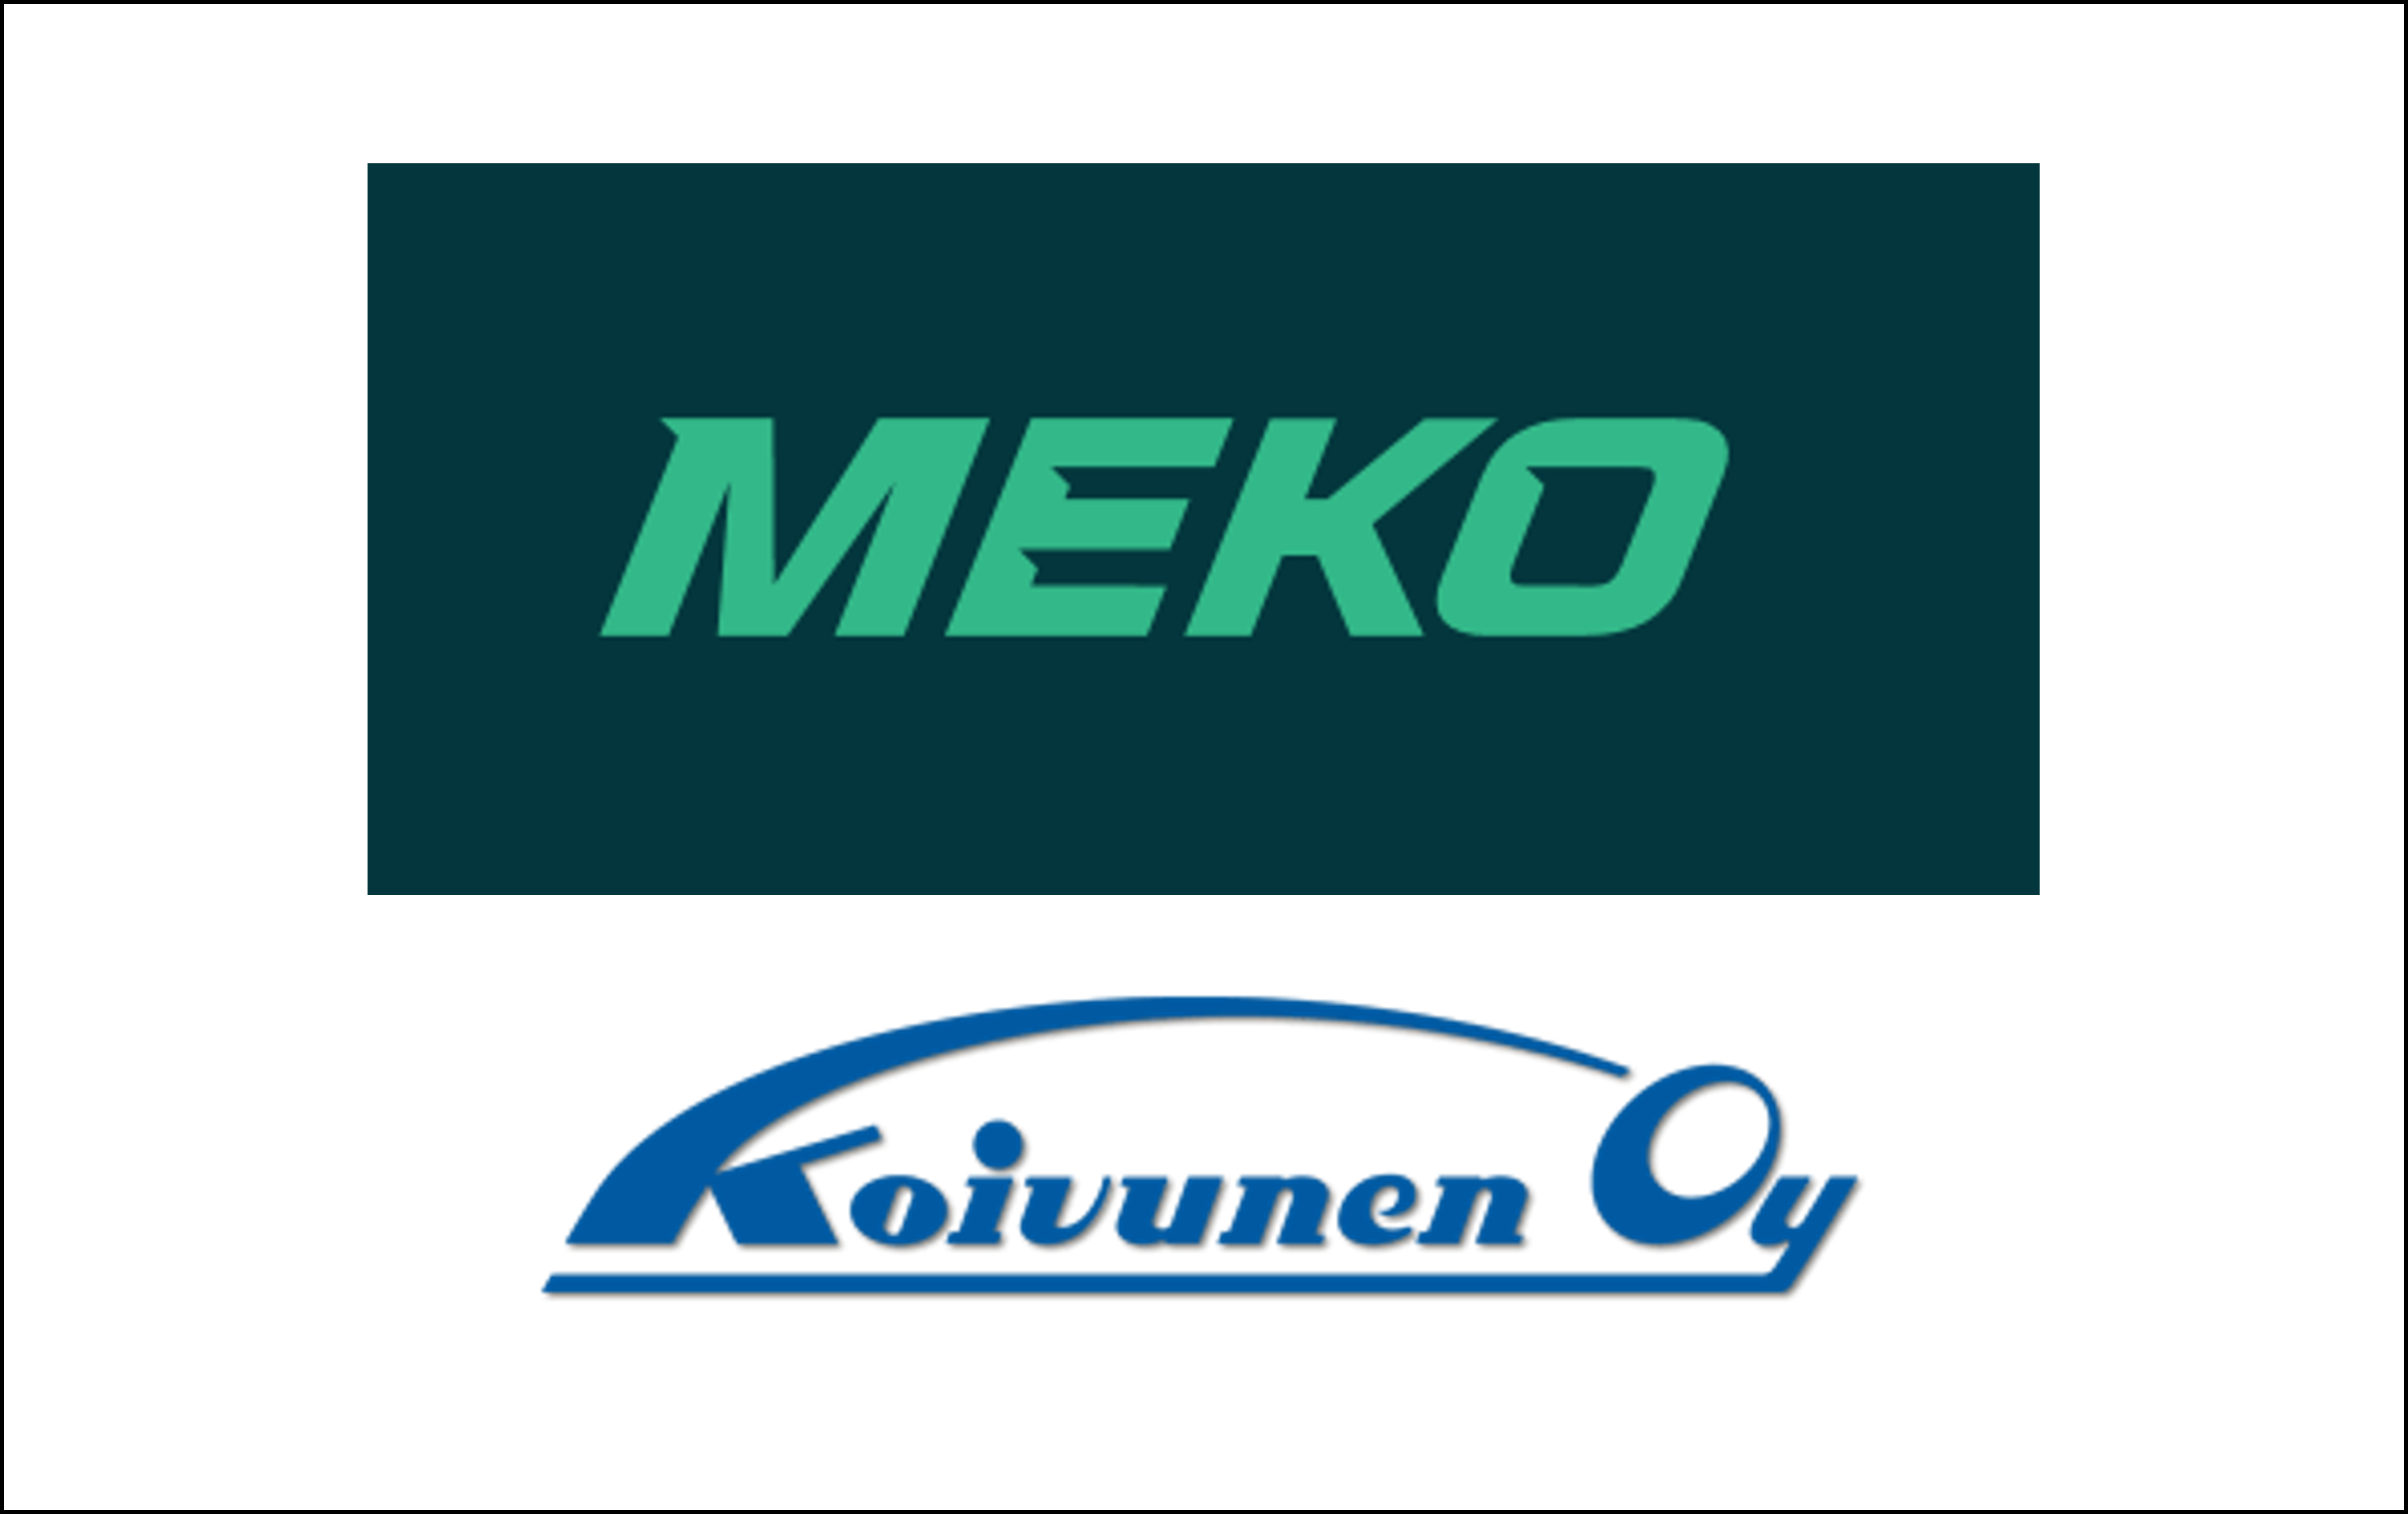 Meko acquires Koivunen